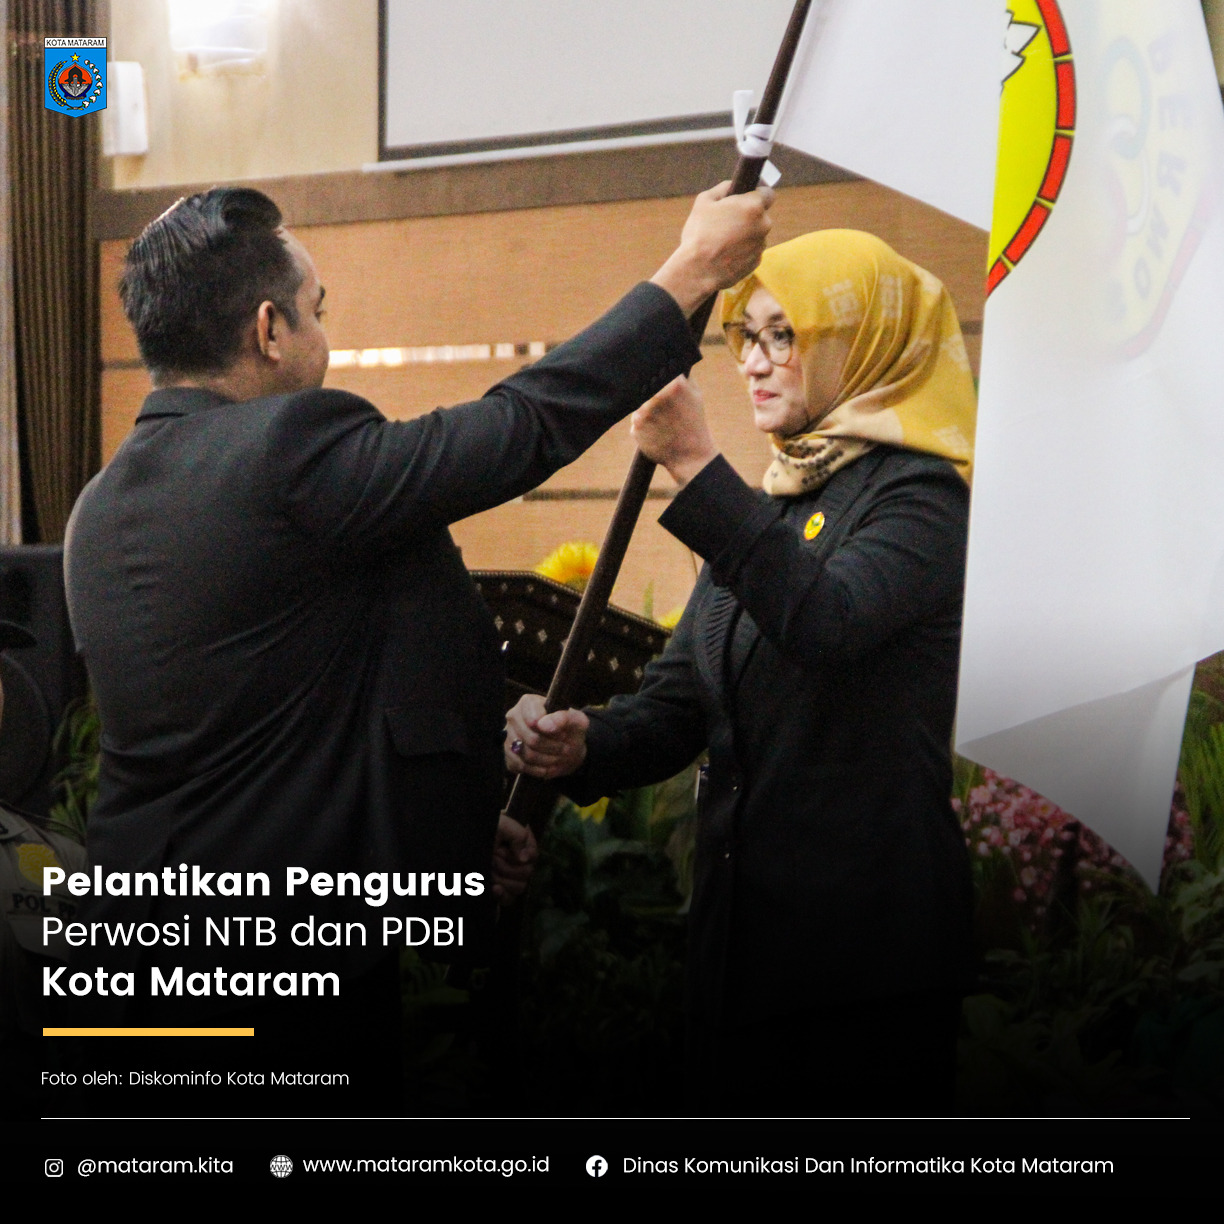 Pelantikan Pengurus Perwosi NTB dan PDBI Kota Mataram